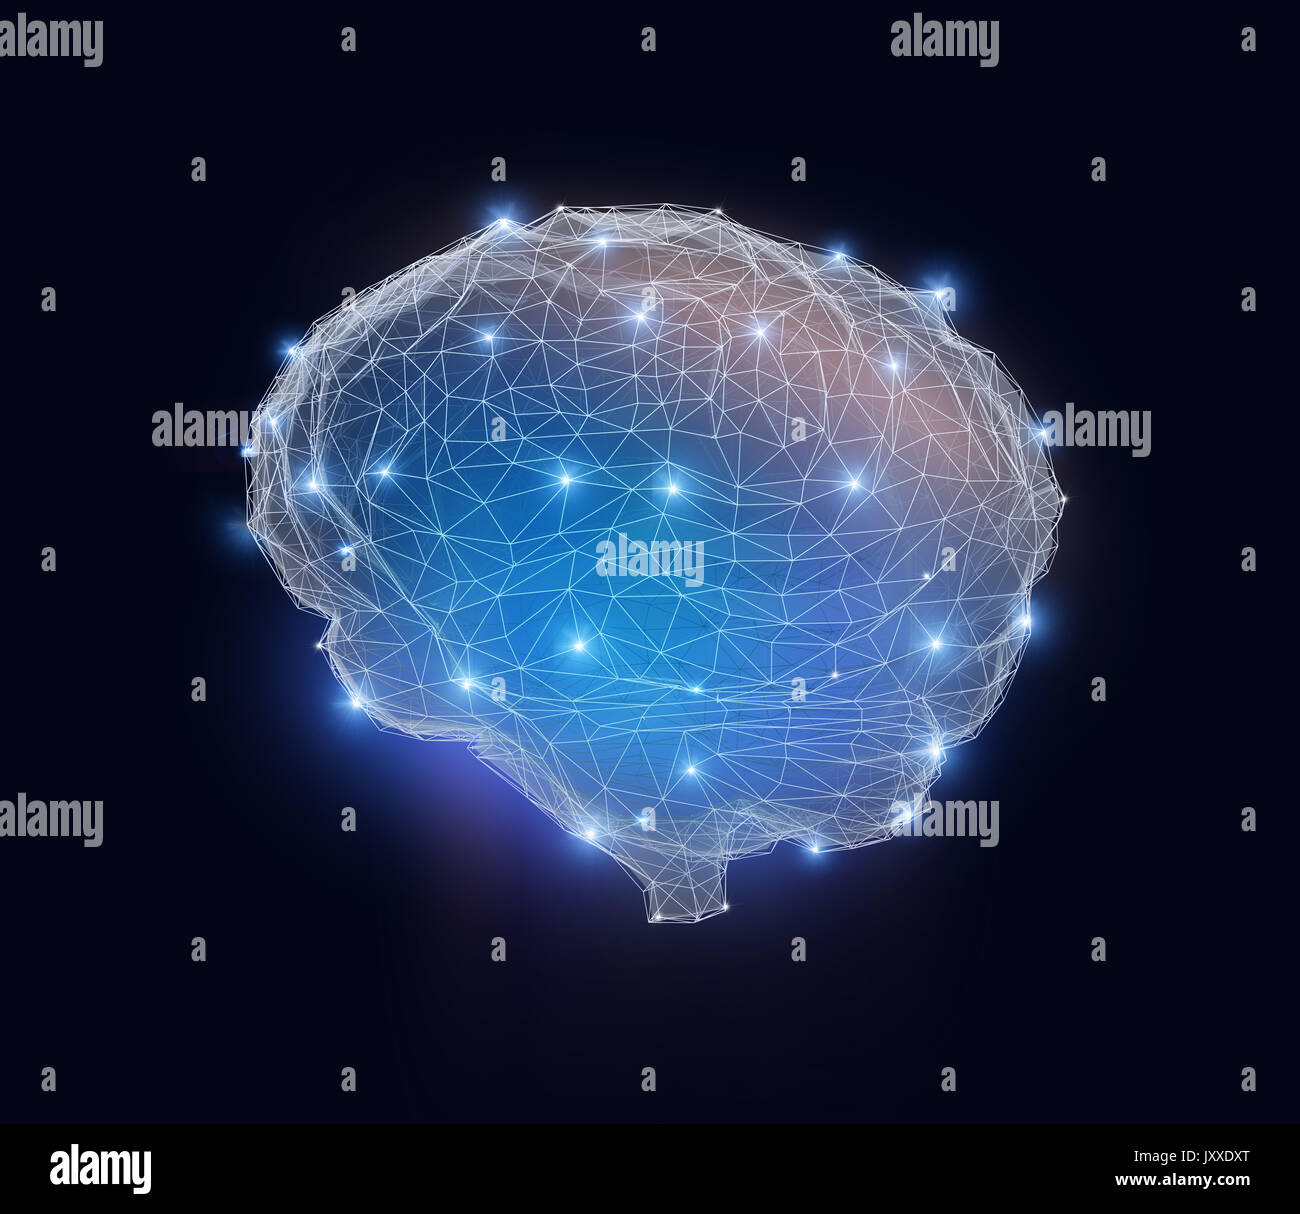 Low Poly Gehirn Modell mit Drahtmodell auf blauem Hintergrund isoliert. Konzept für künstliche Intelligenz. 3D-Bild. Stockfoto